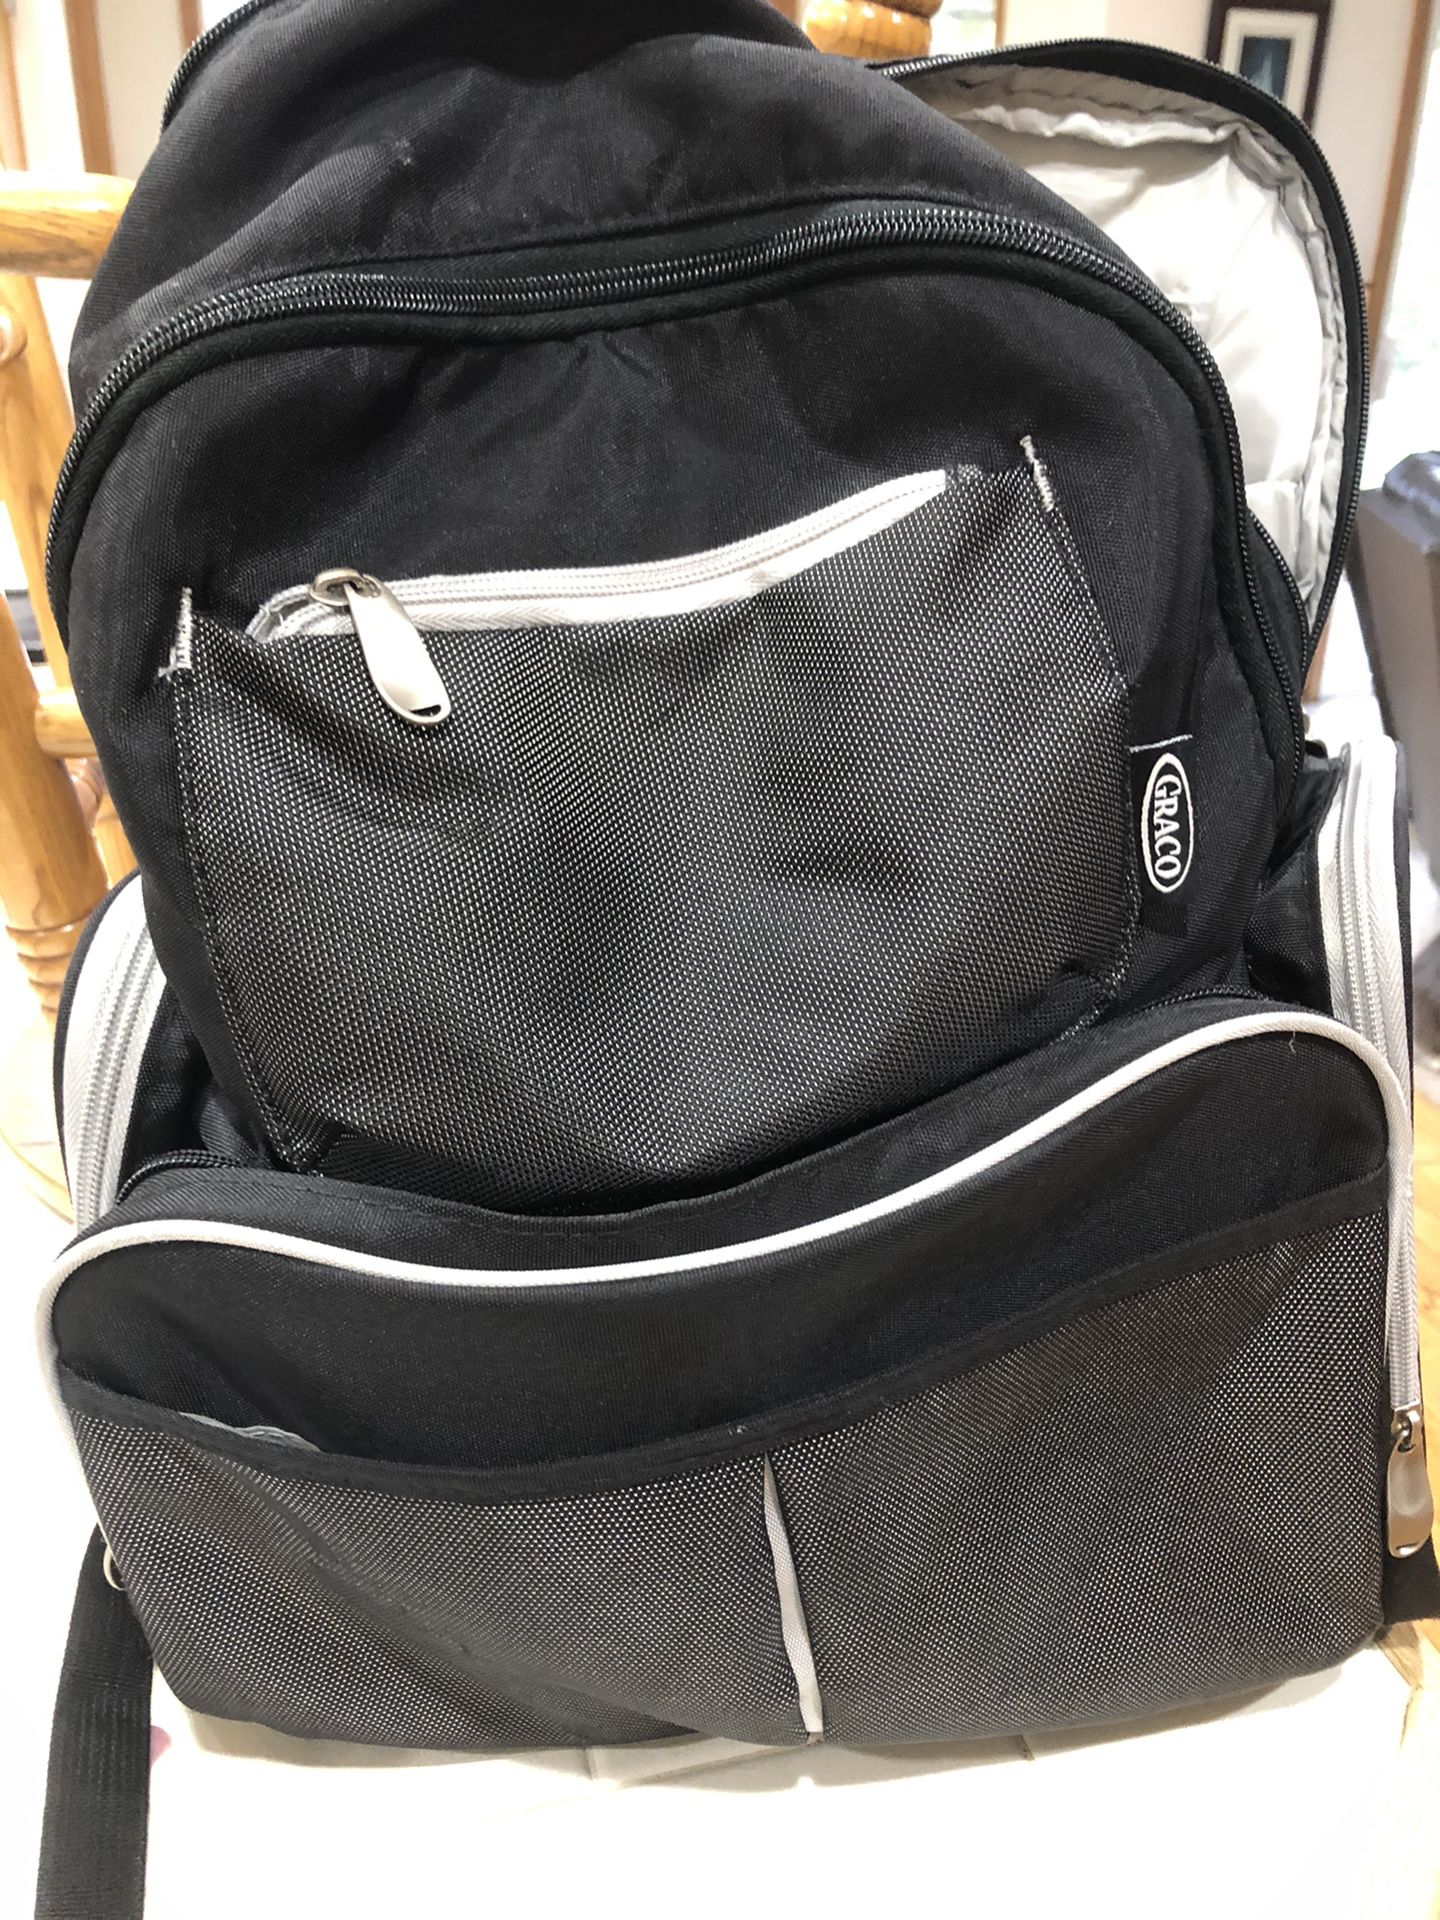 Graco diaper backpack